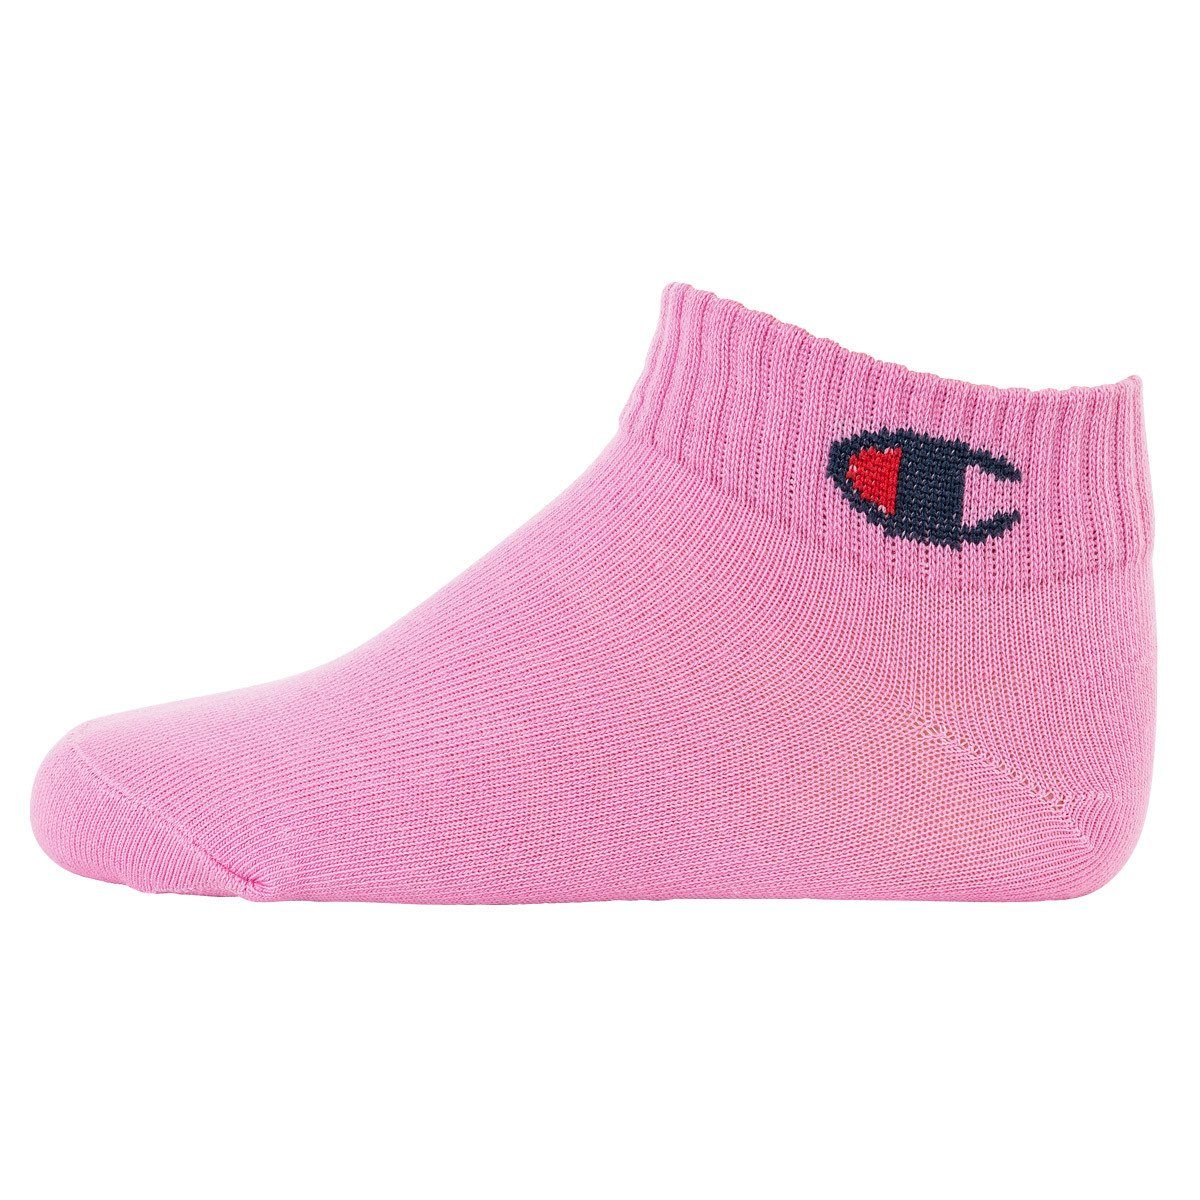 Freizeitsocken Kinder Pack- Pink/Weiß/Blau Socken, Champion einfarbig Socken, Crew 6er